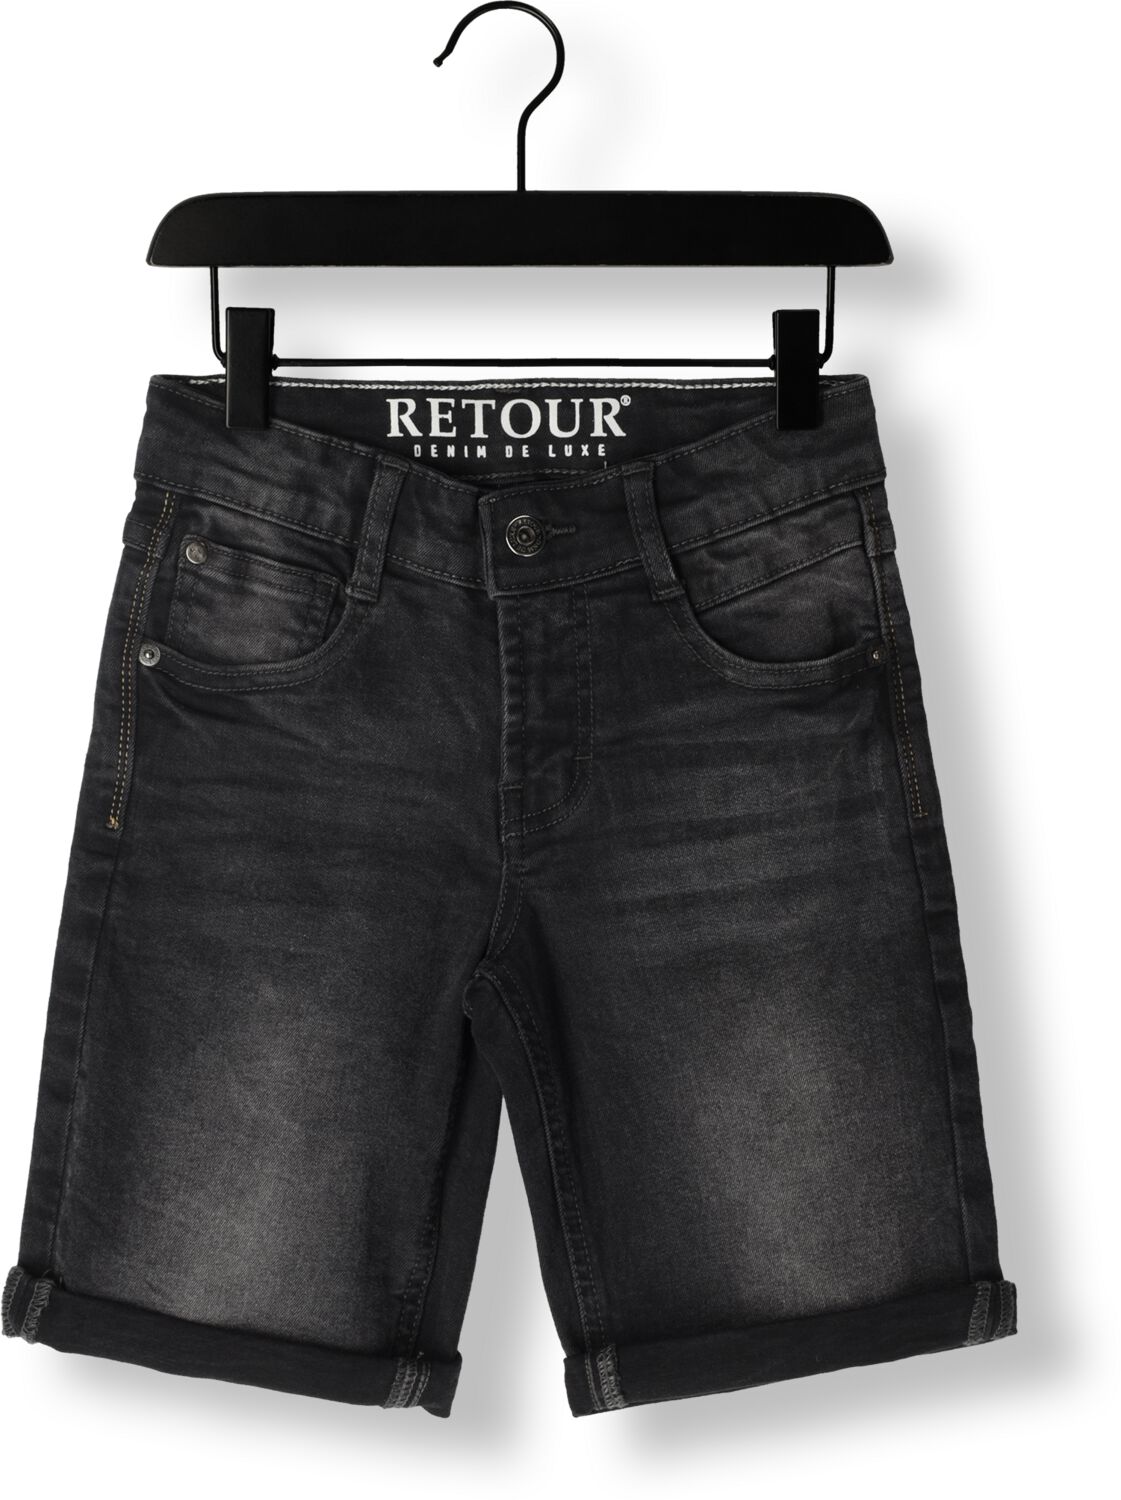 Retour Jeans denim short Reven industrial grey Korte broek Zwart Jongens Stretchdenim 158